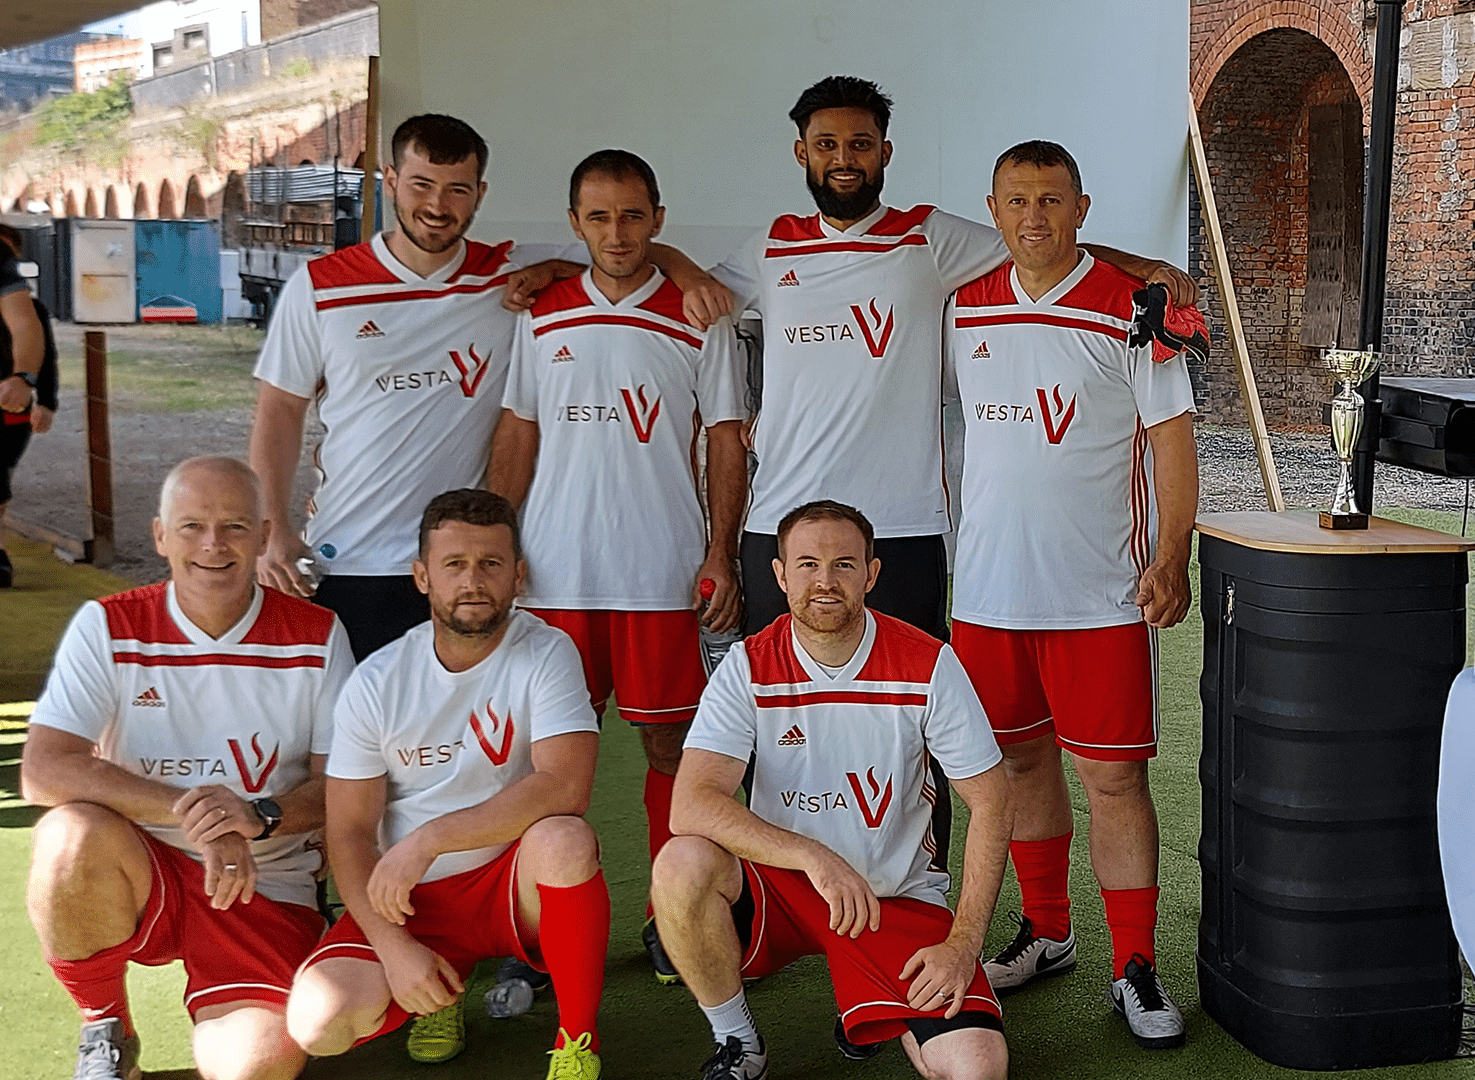 Vesta football team